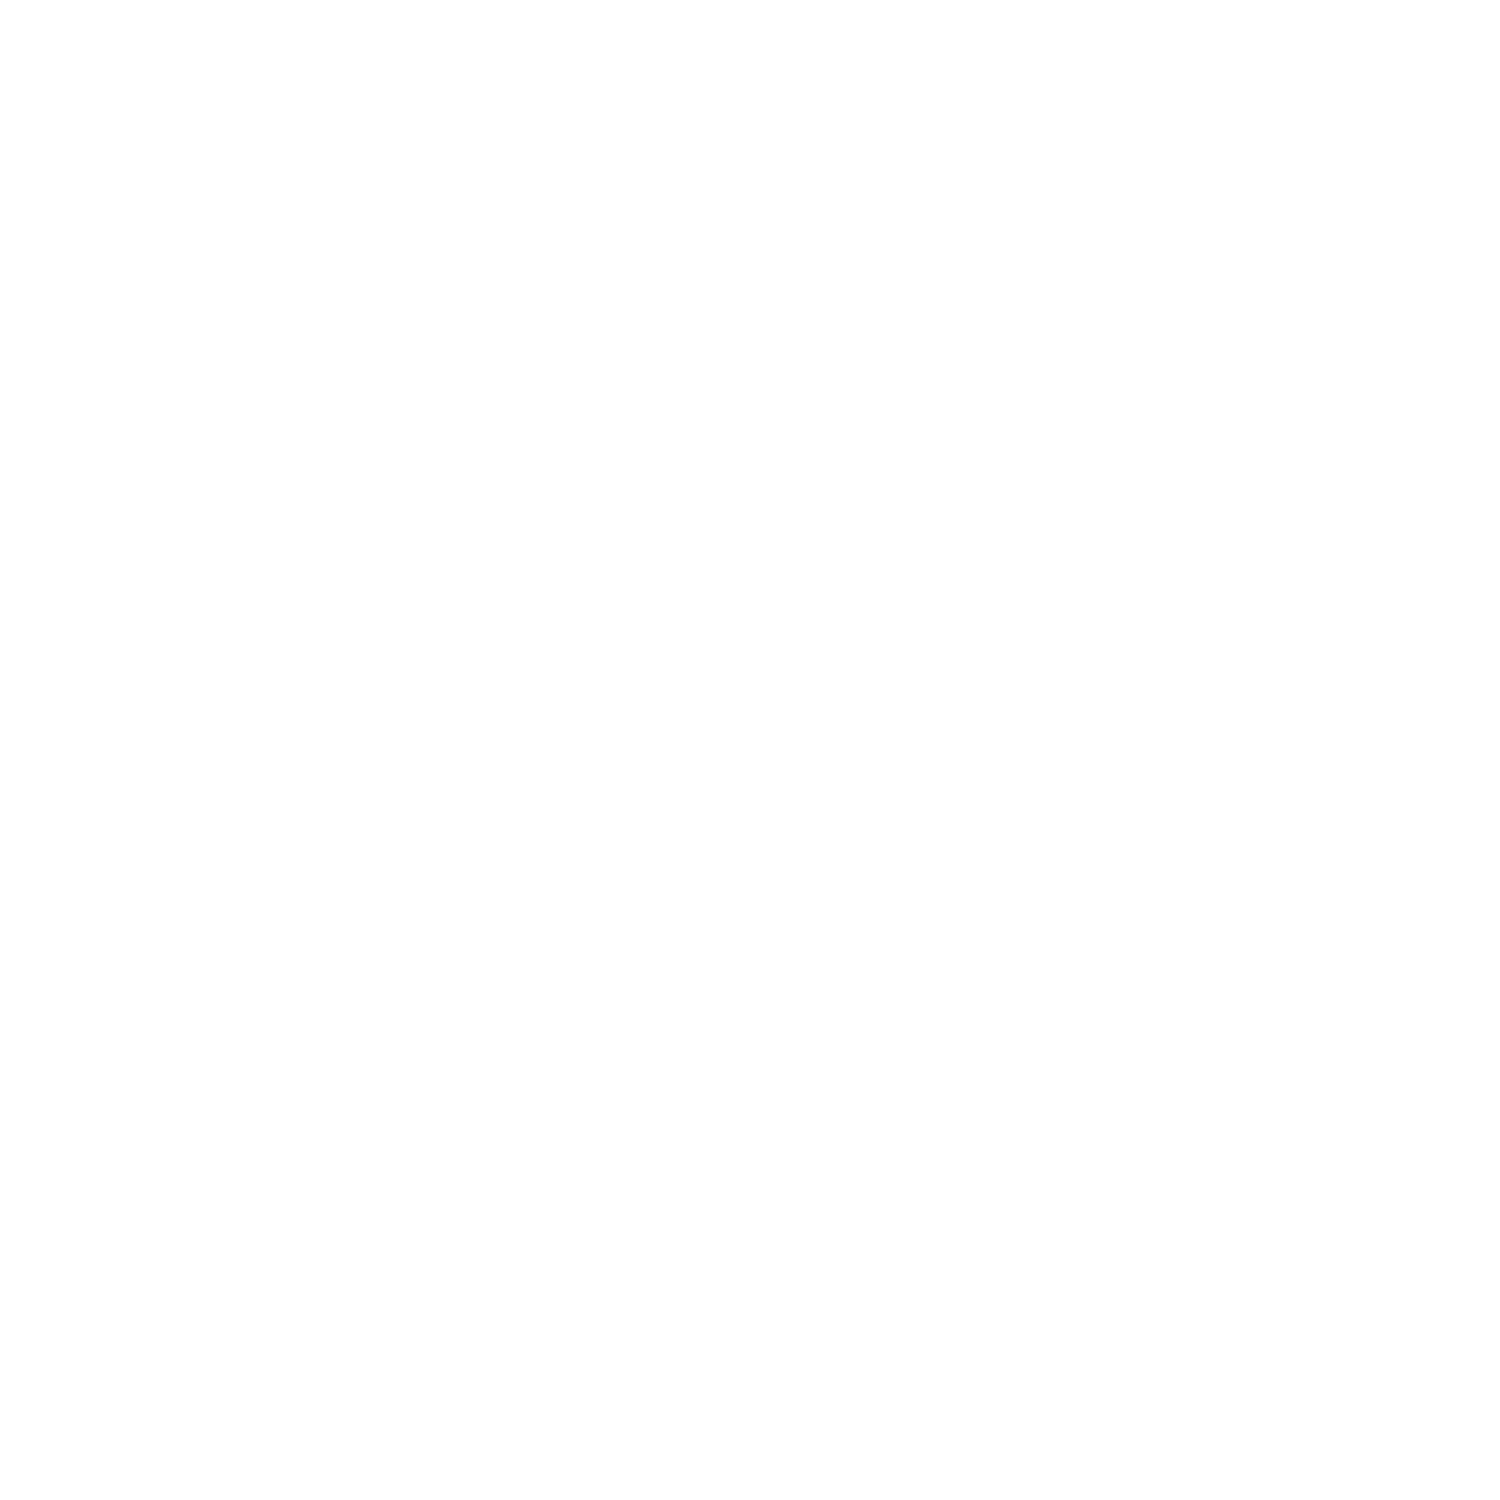 Riley's Ranch